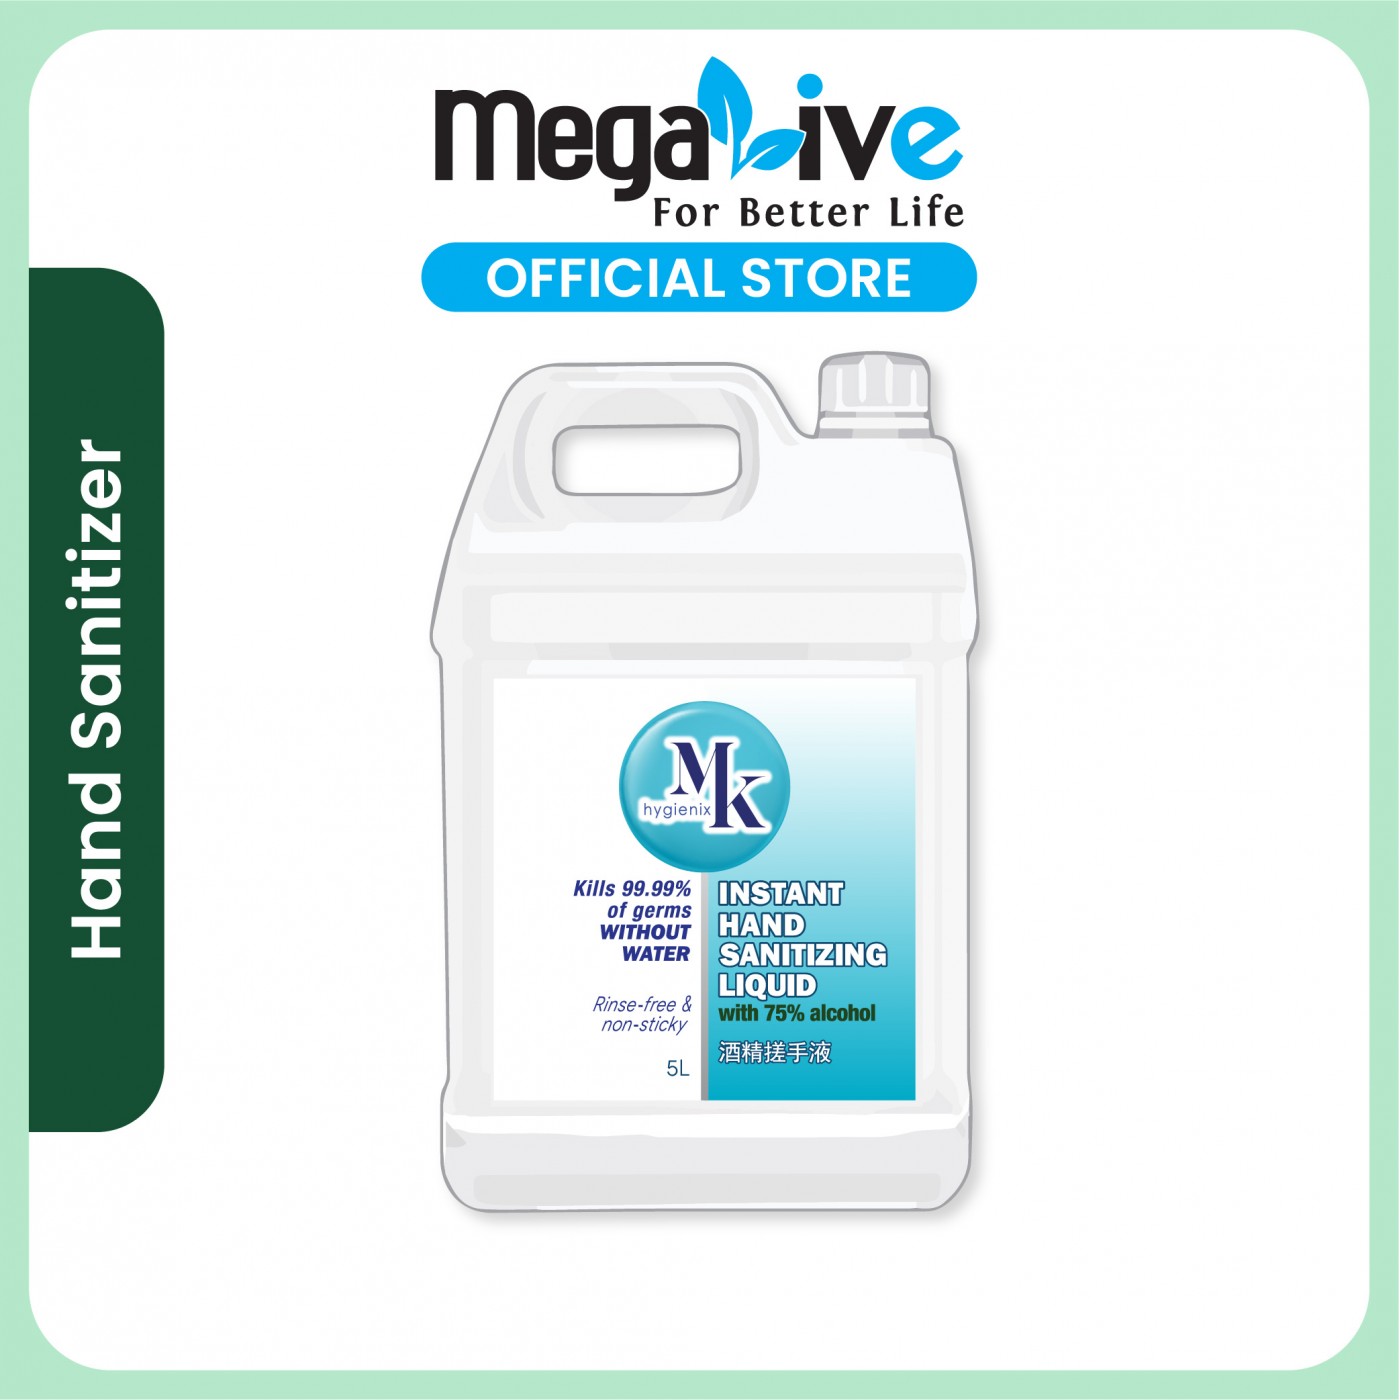 MK hygienix Instant Hand Sanitizer Liquid Spray 5L